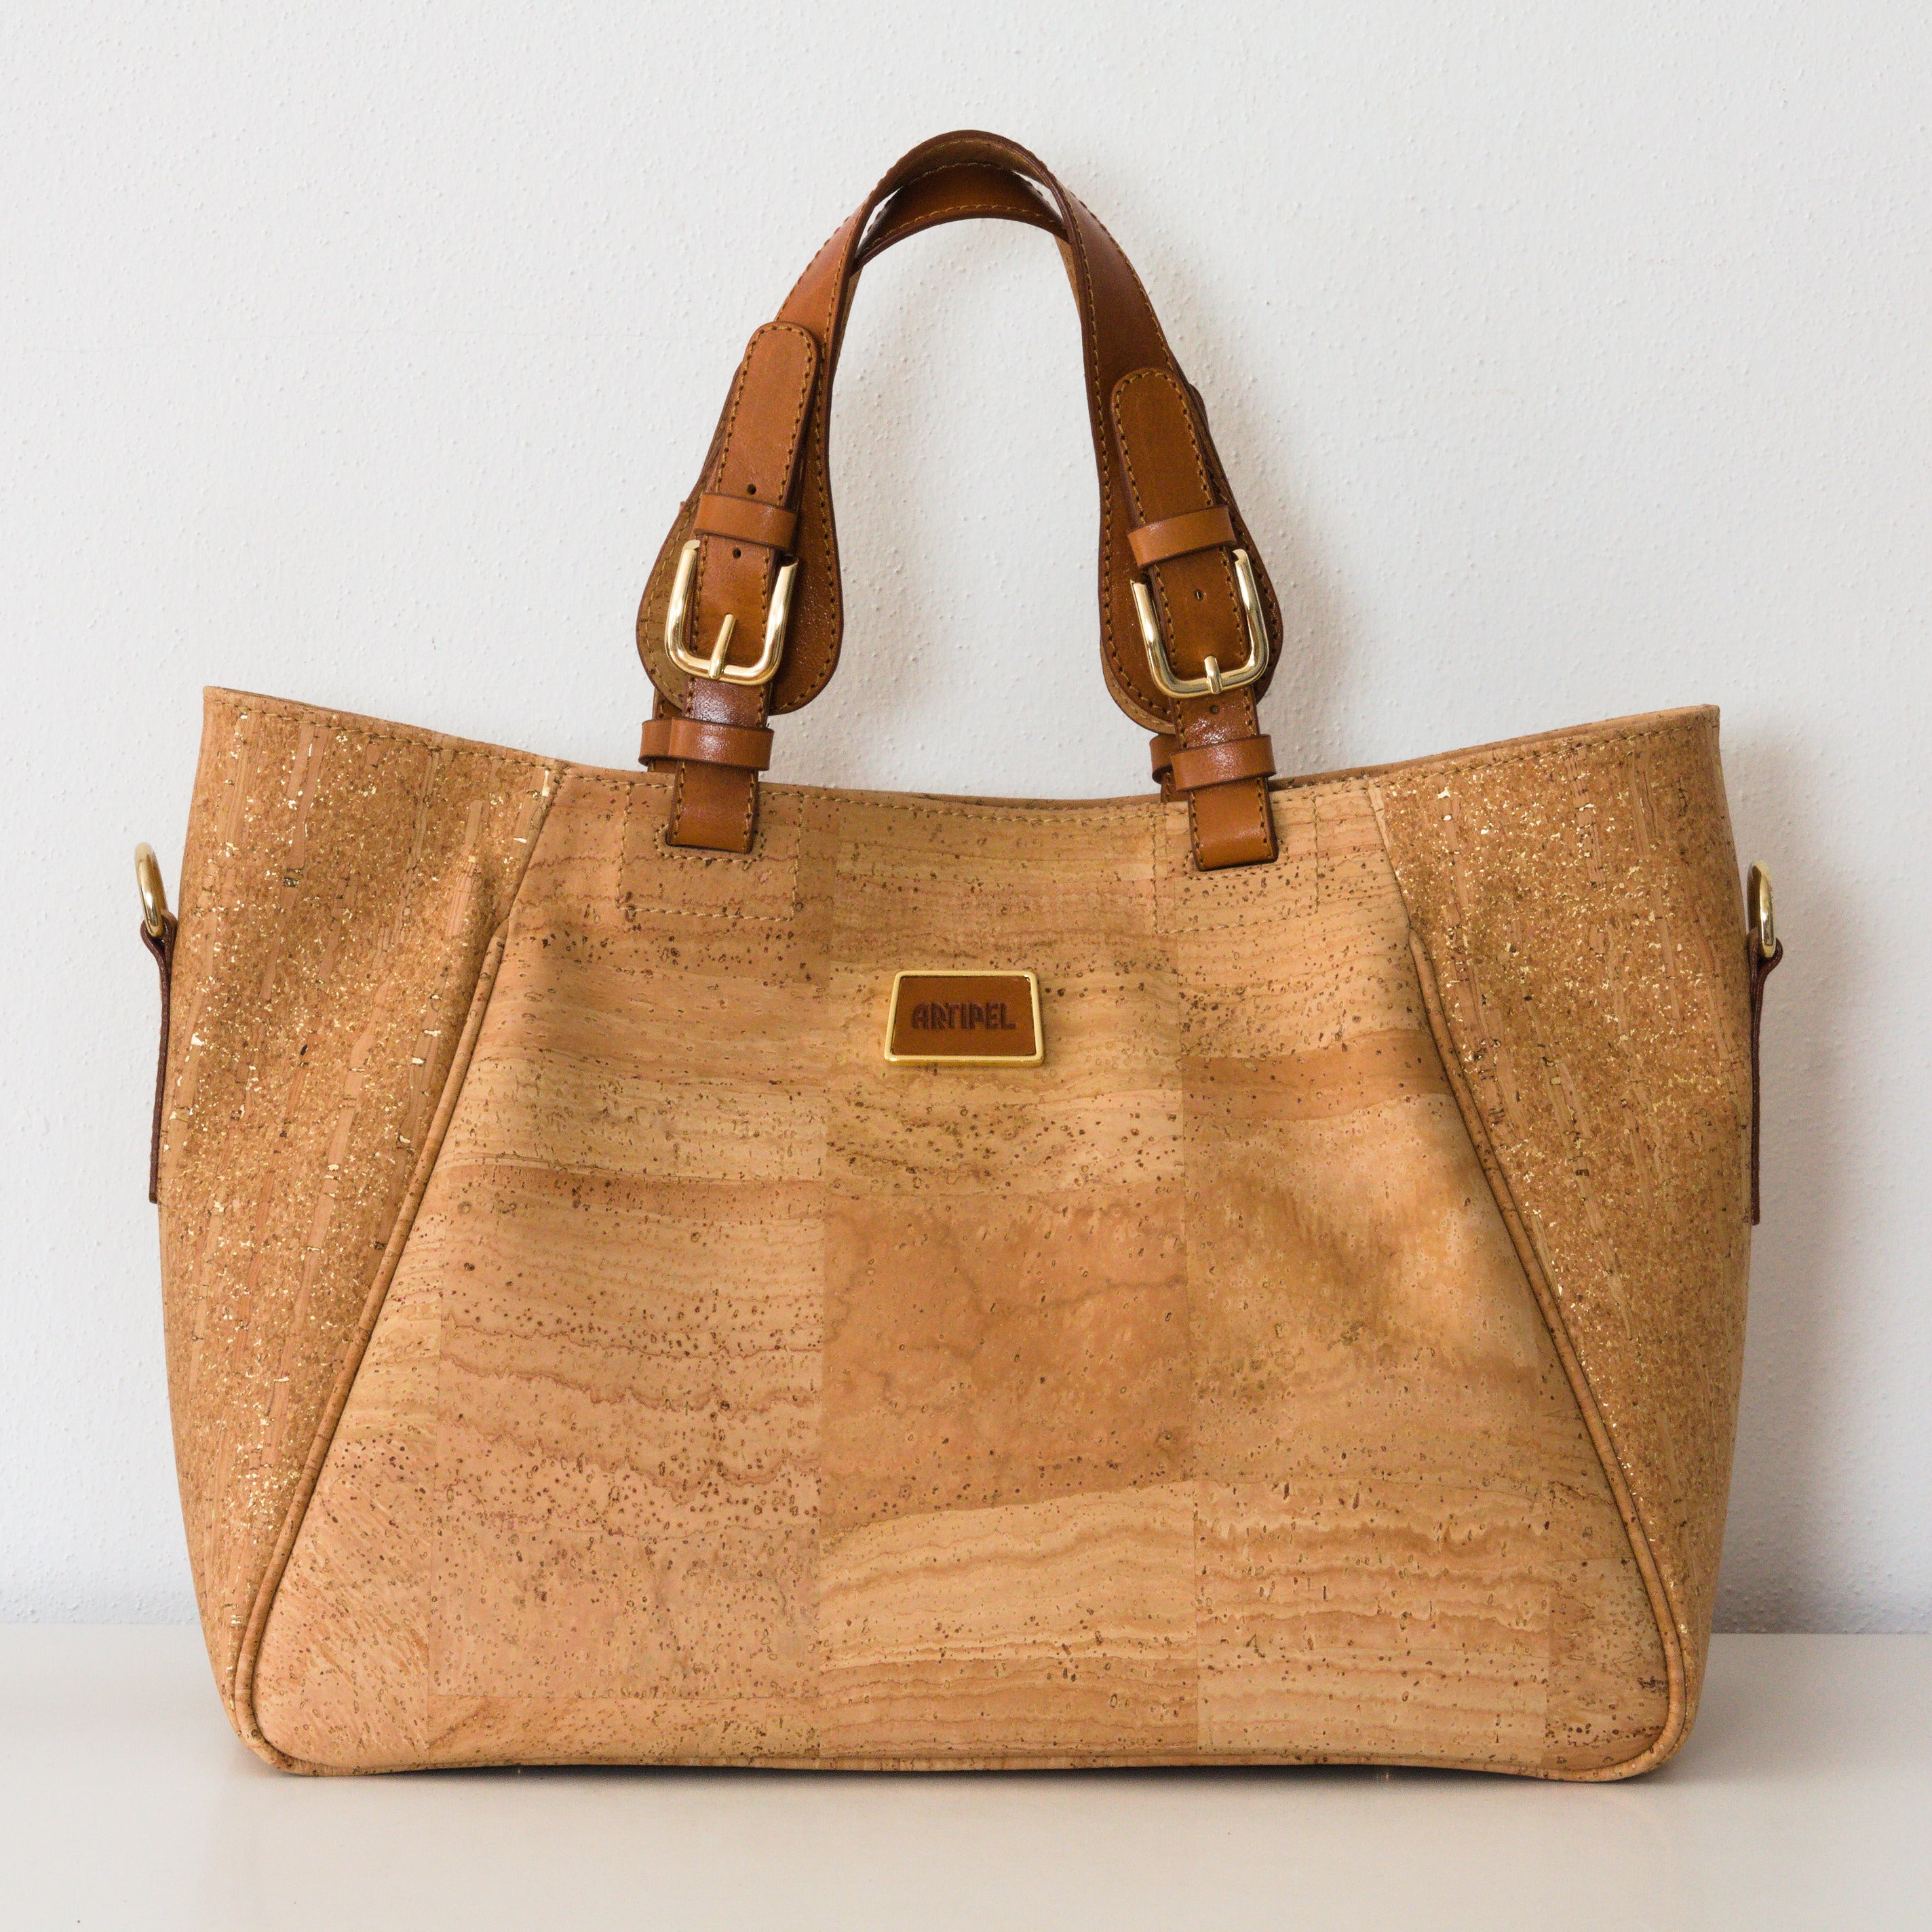 Cork handbag * in 2 sizes * shoulder bag for women * crossbody * shopper * handmade in Portugal